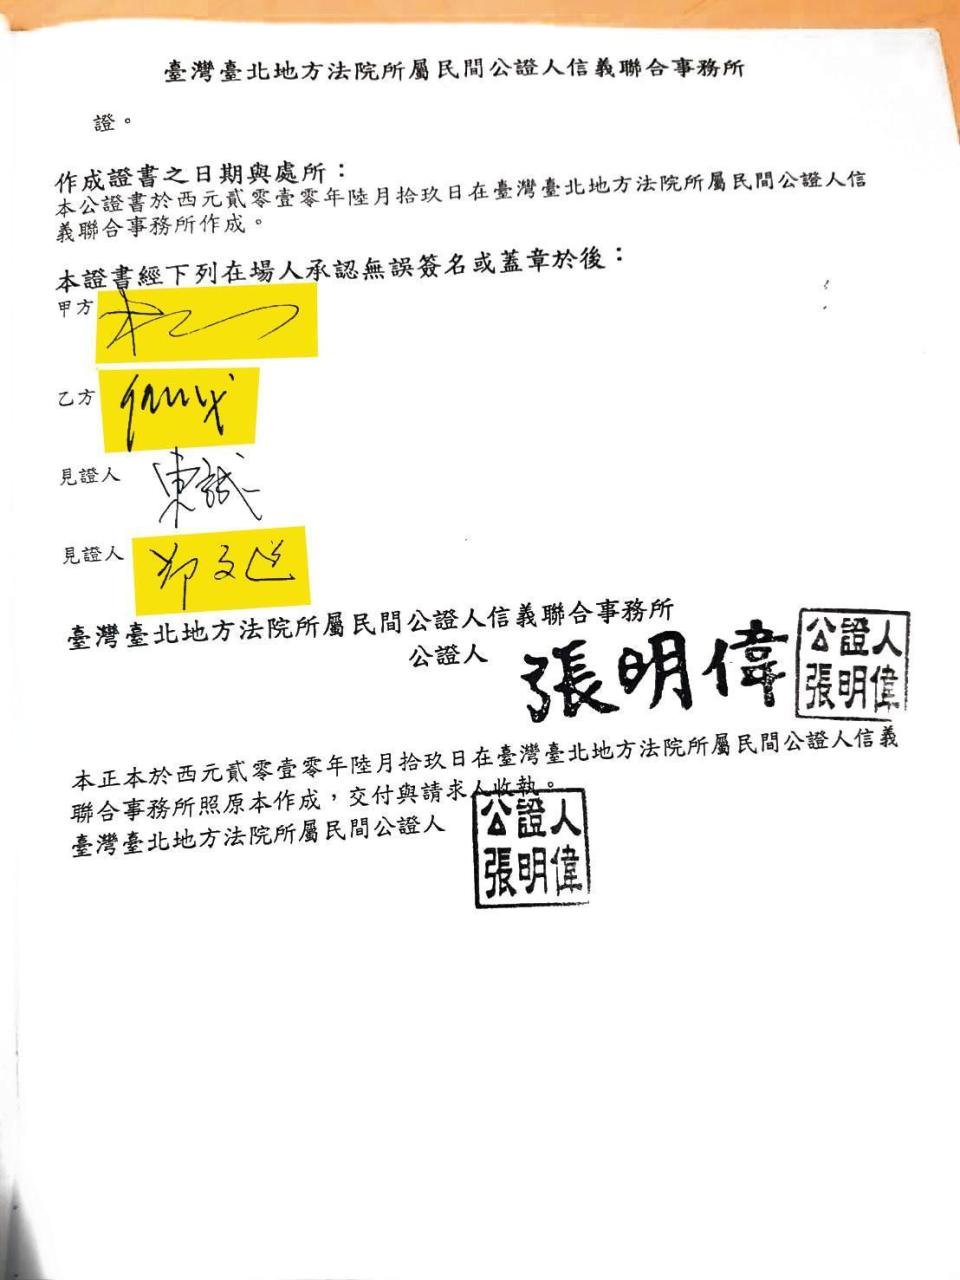 根據楊思漢與任國龍所簽的補充協議契約，雙方扣除銷售面積後，均分剩餘利潤，此案正由香港法院審理中。